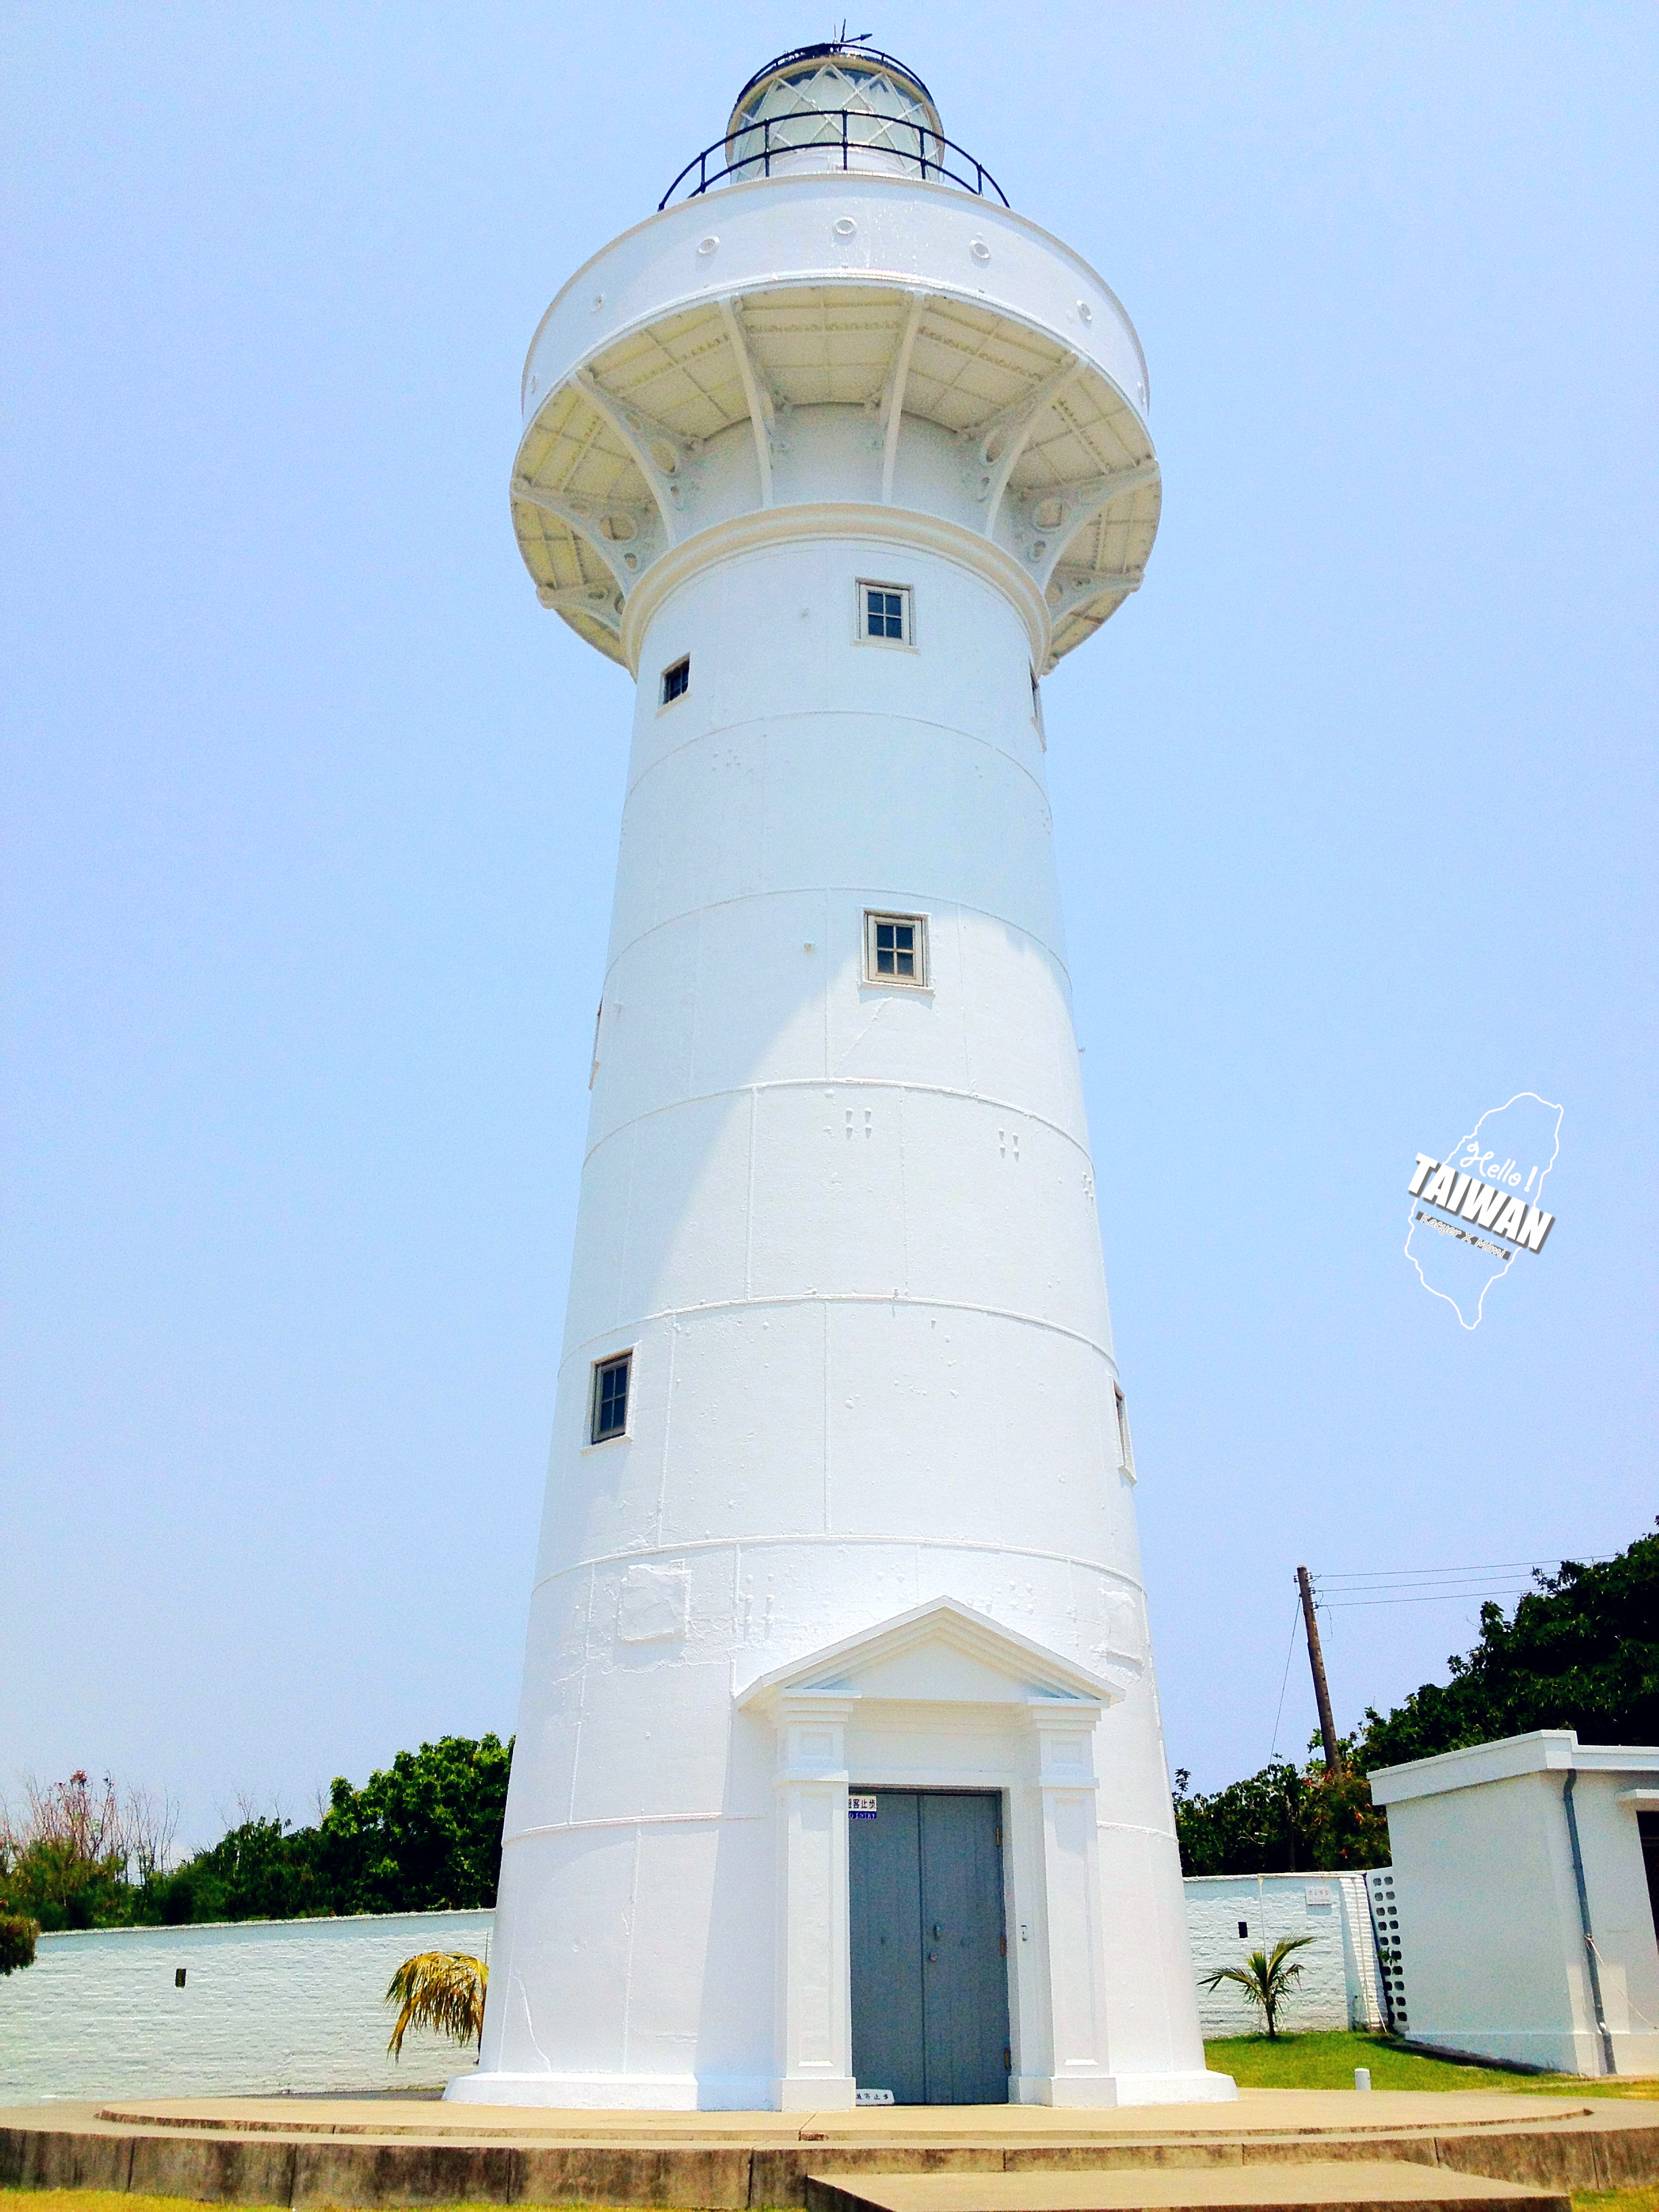 【携程攻略】垦丁鹅銮鼻灯塔景点,鹅銮鼻灯塔台湾最南端的灯塔。塔身为全白圆柱形白铁制，塔高24.1米，…